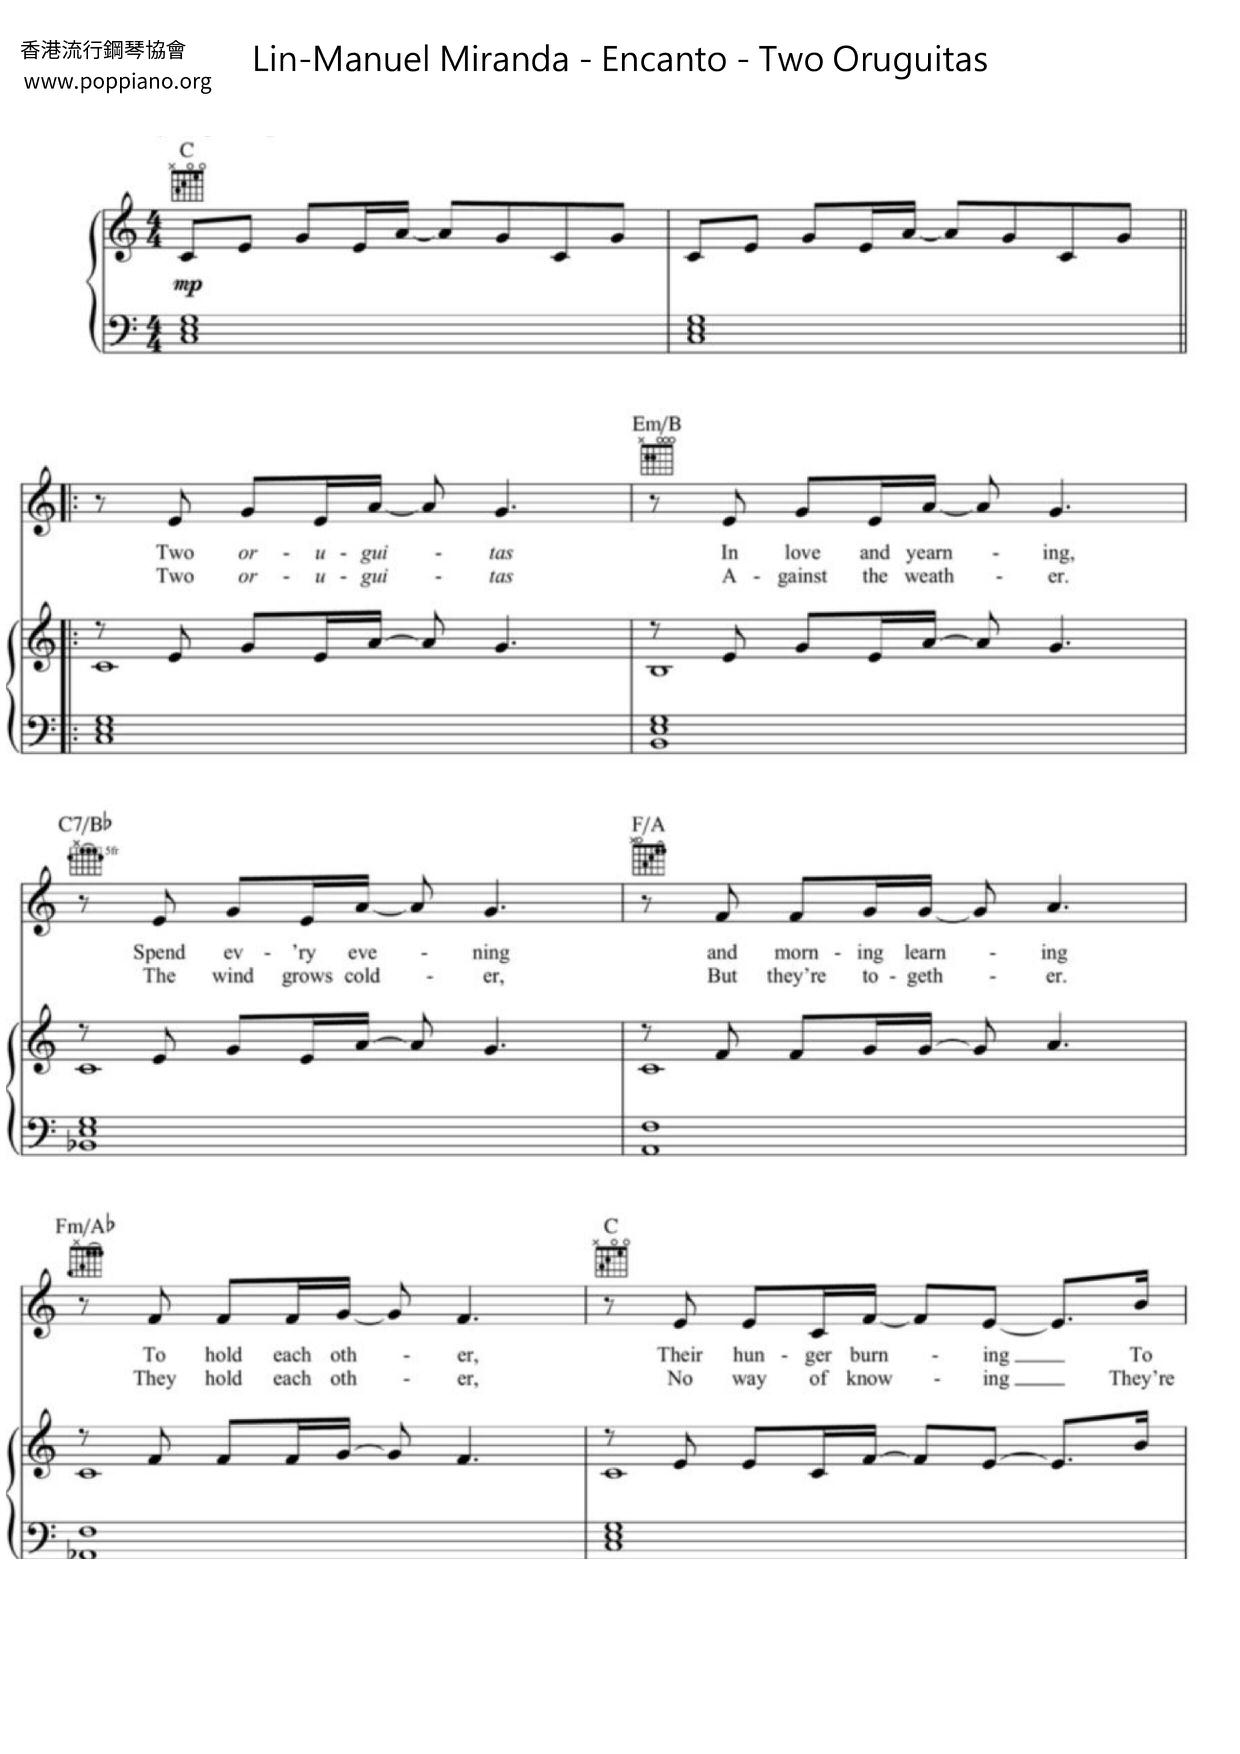 Encanto - Two Oruguitas Score